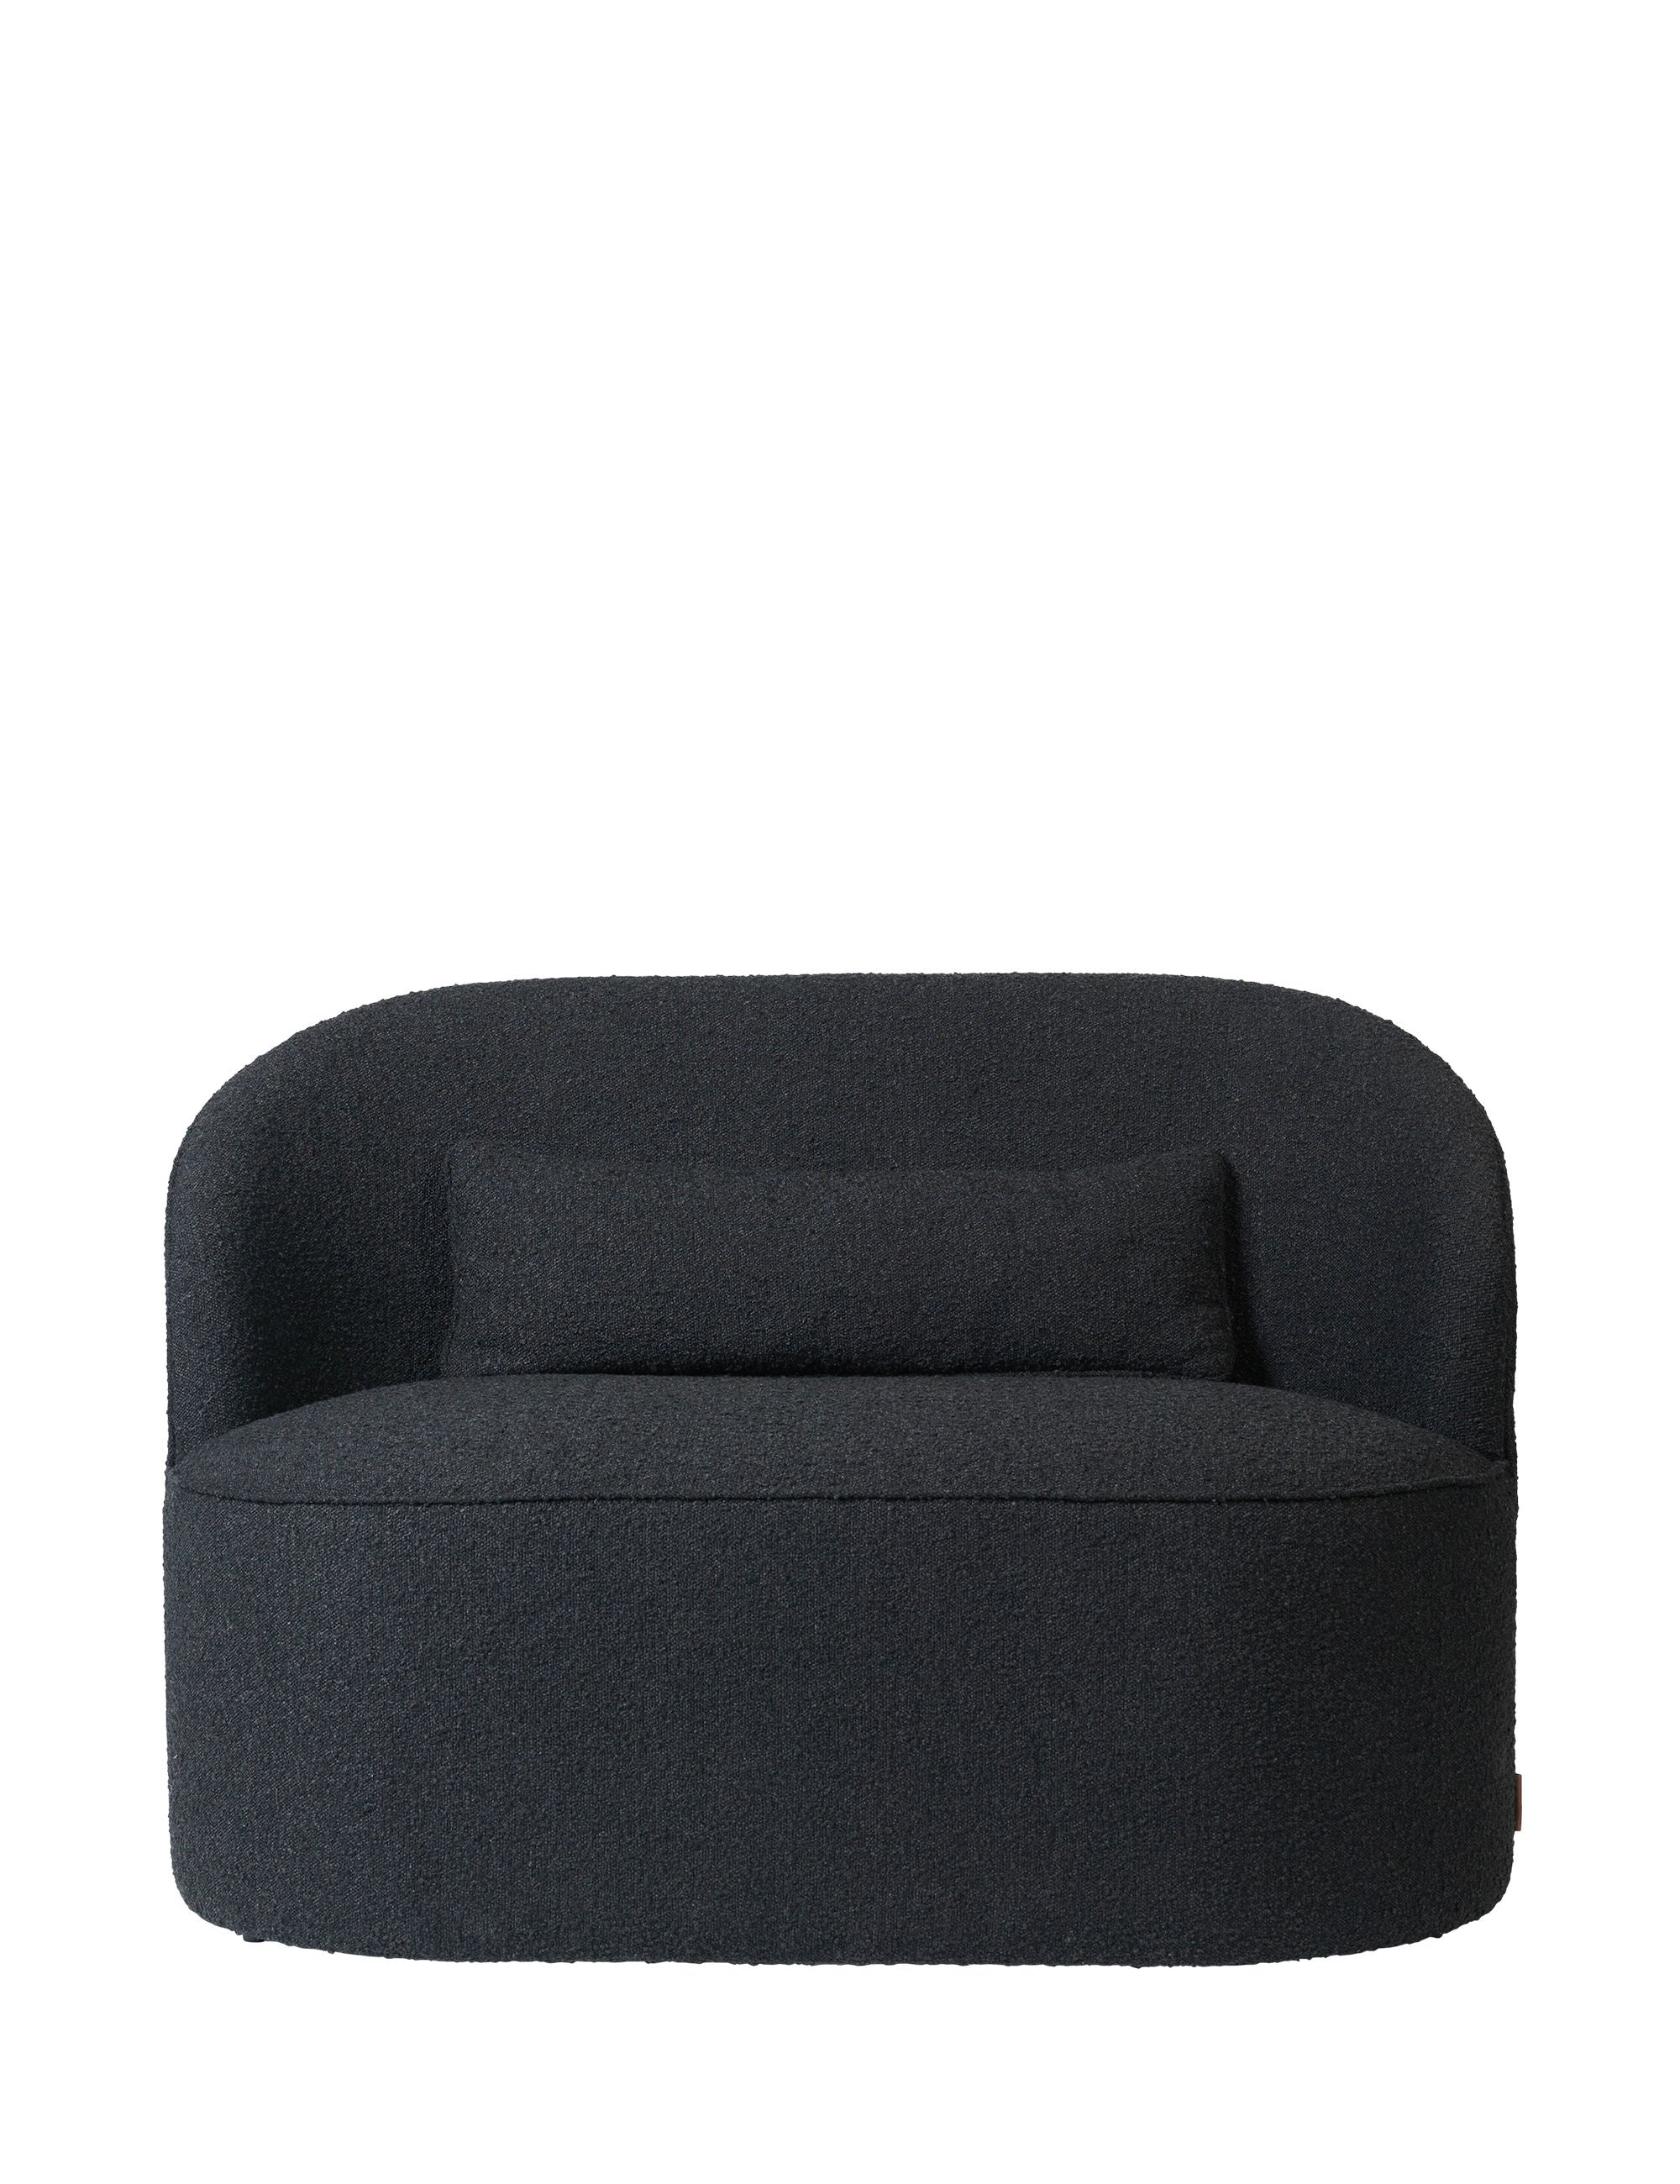 Cozy Living Effie Loungesofa in der Farbe Kohle